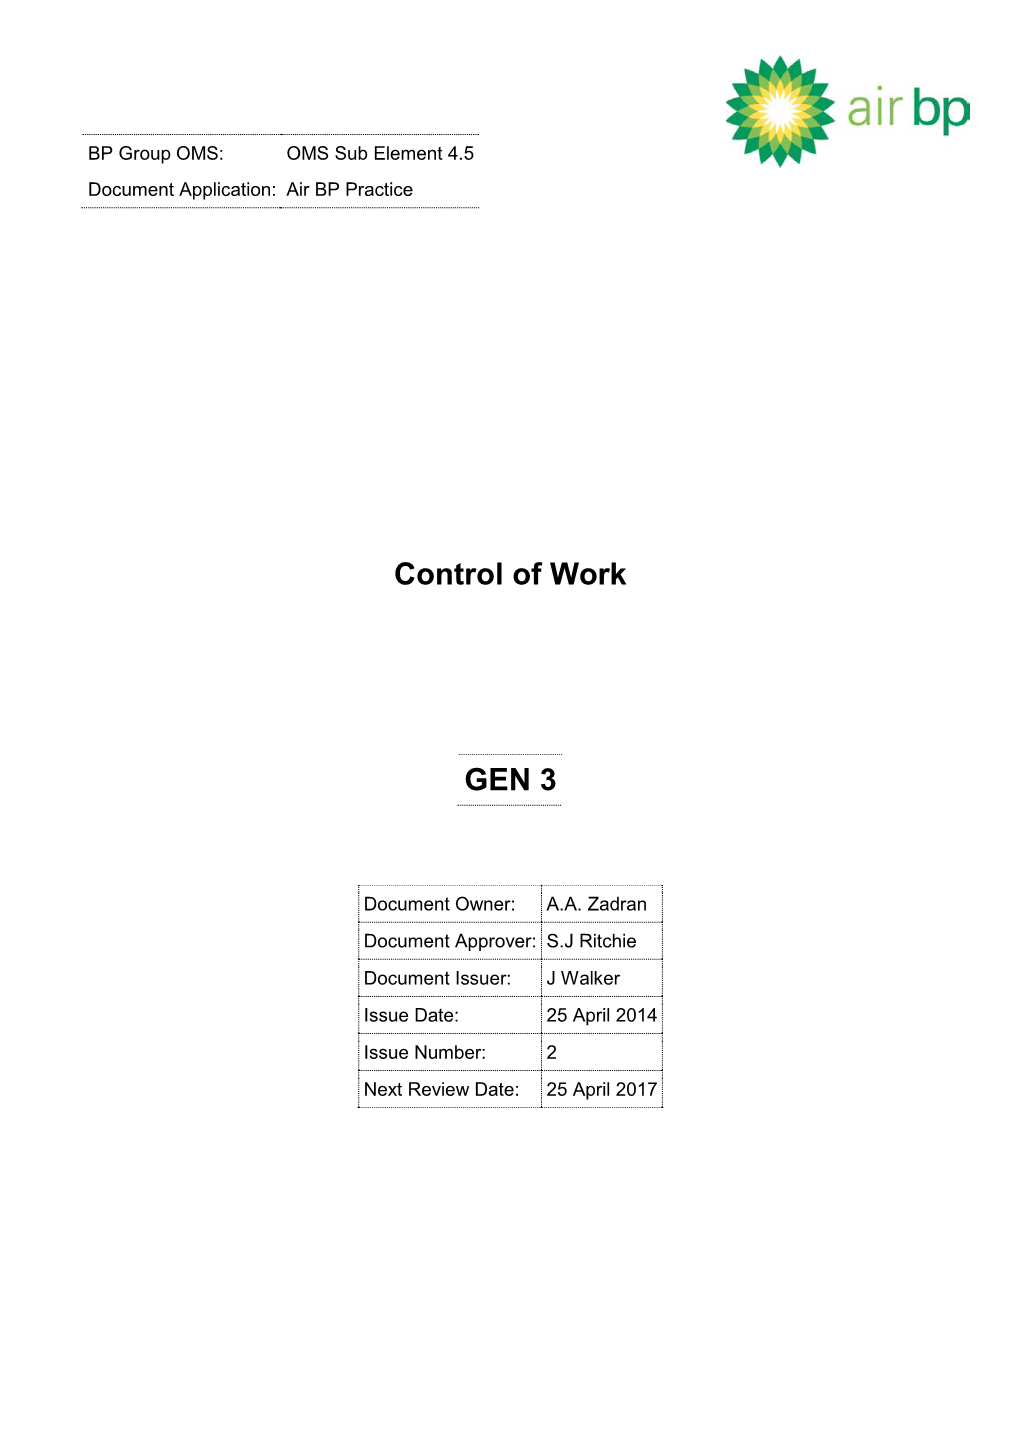 GEN 3 Control of Work